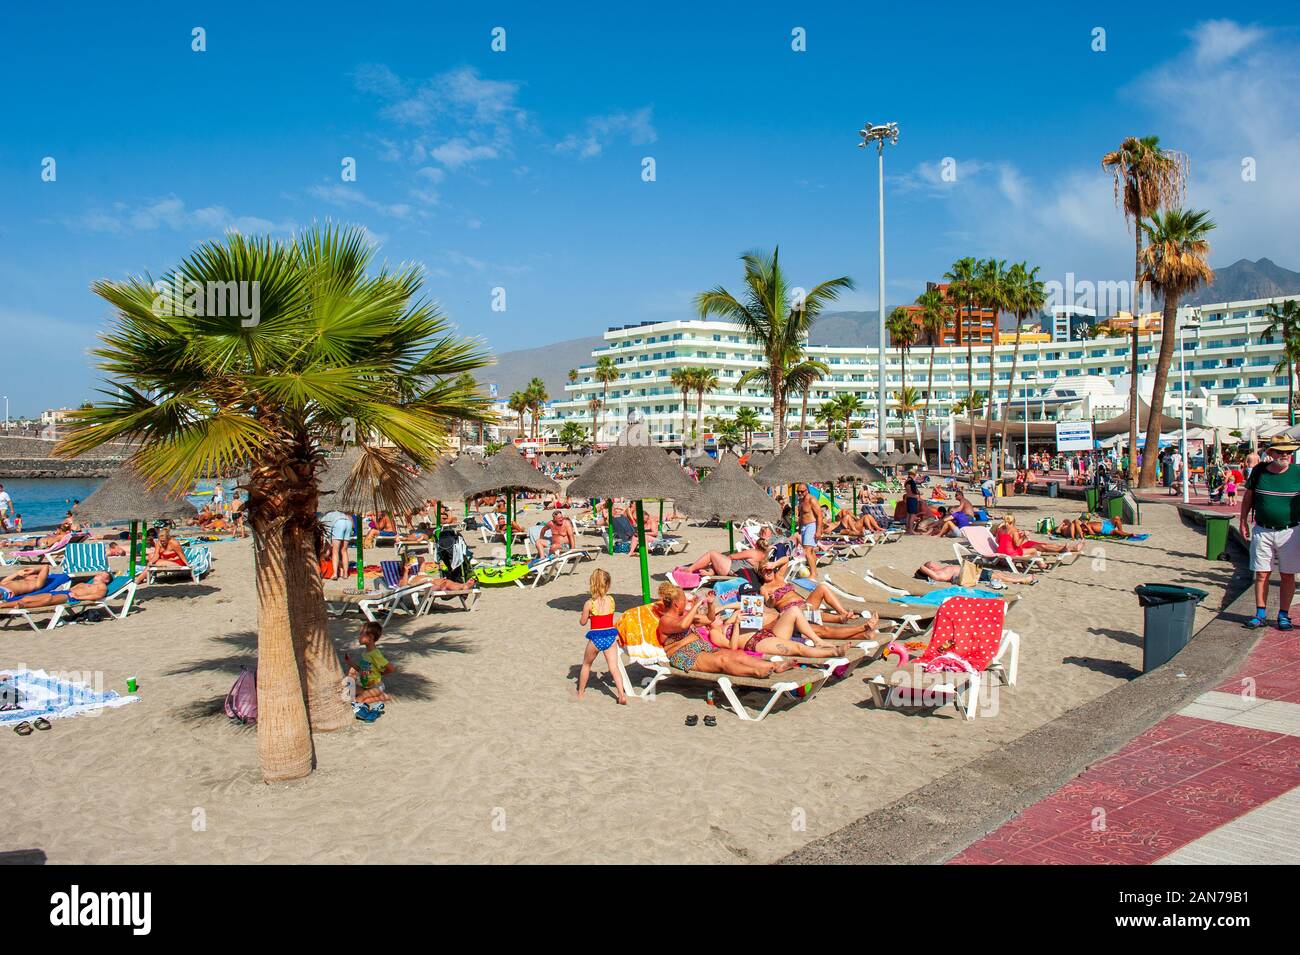 Isola Canarie TENERIFE, Spagna - 26 Dic, 2019: i turisti sono rilassanti su playa la pinta Puerto Colon. Una spiaggia molto popolare nei pressi della città di San Eugenio. Foto Stock